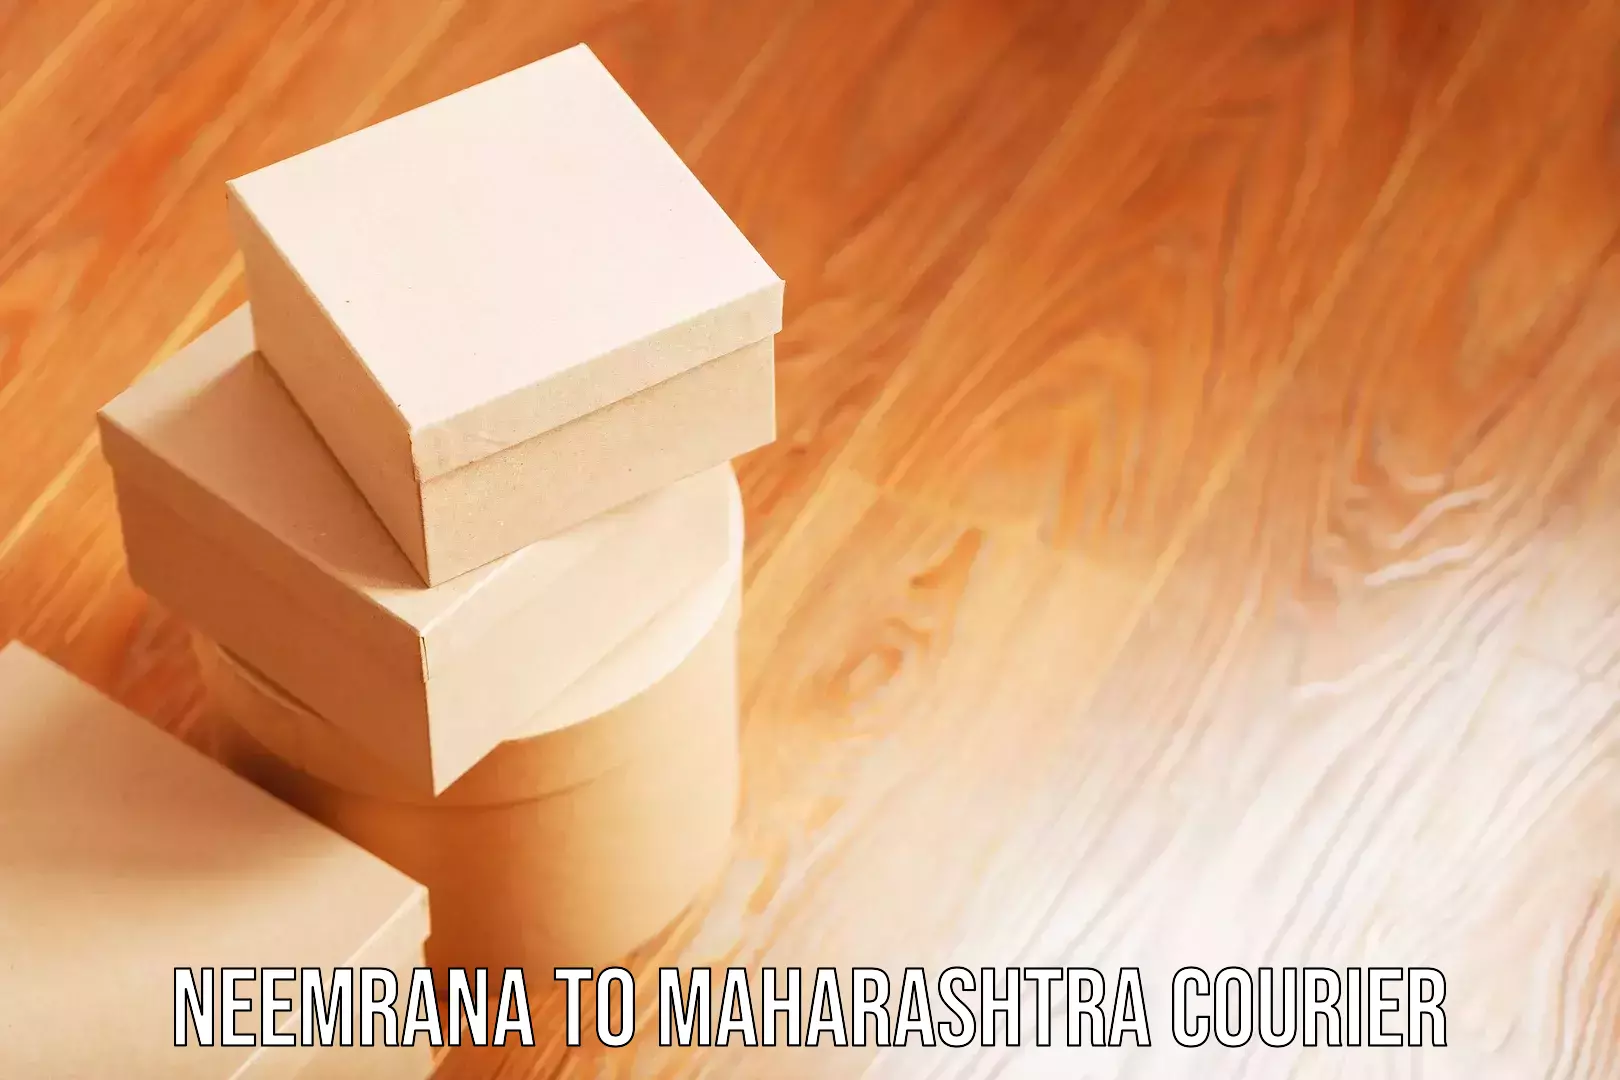 Luggage transport company Neemrana to Maharashtra